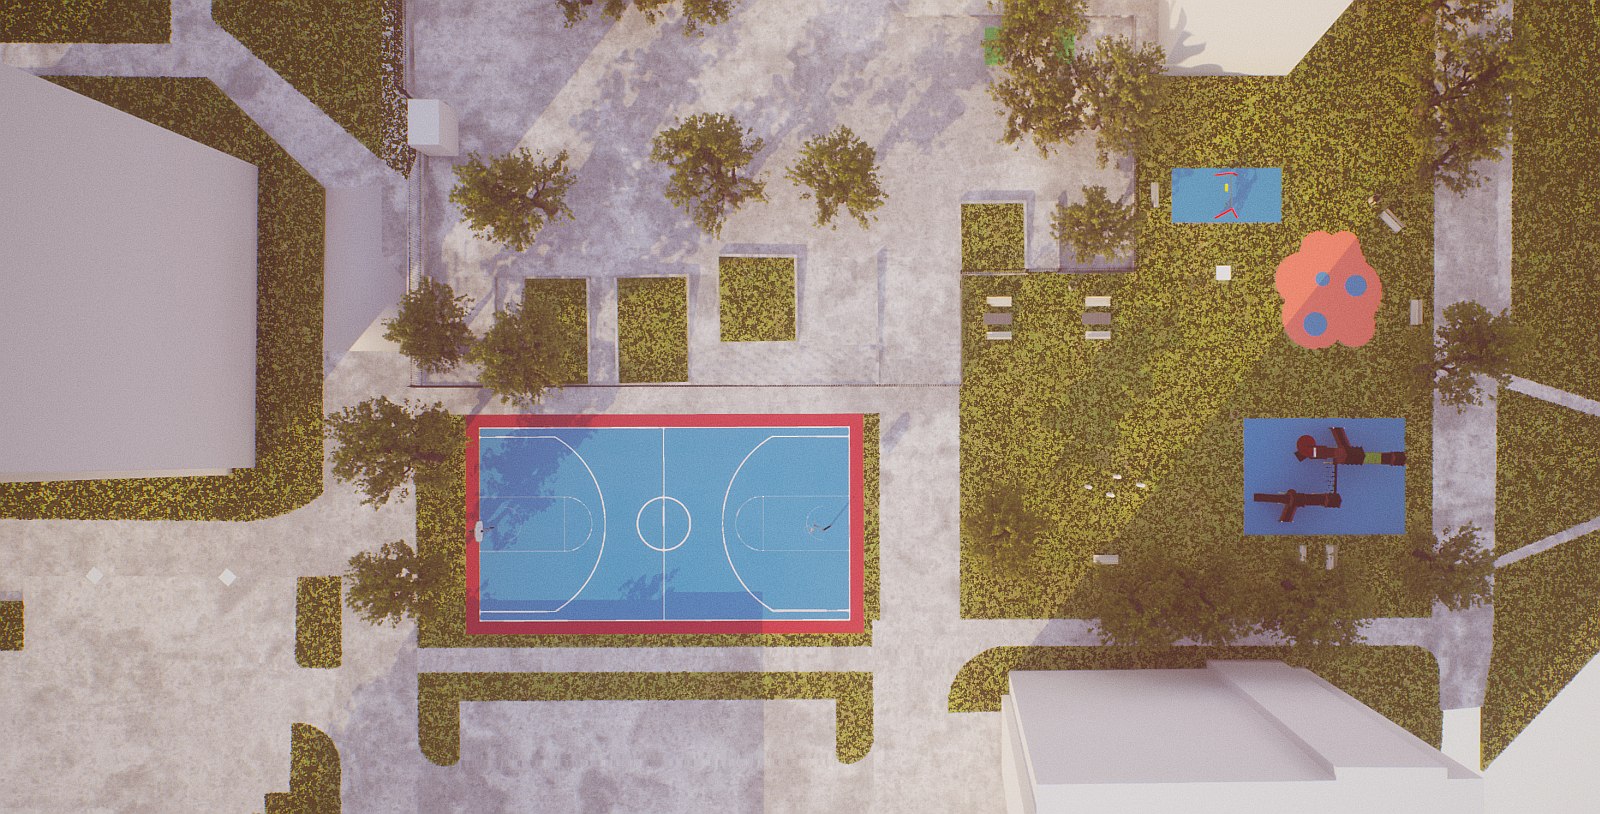 Lakossági fórum a Vízivárosban - bemutatták az új játszótér és sportpálya terveit